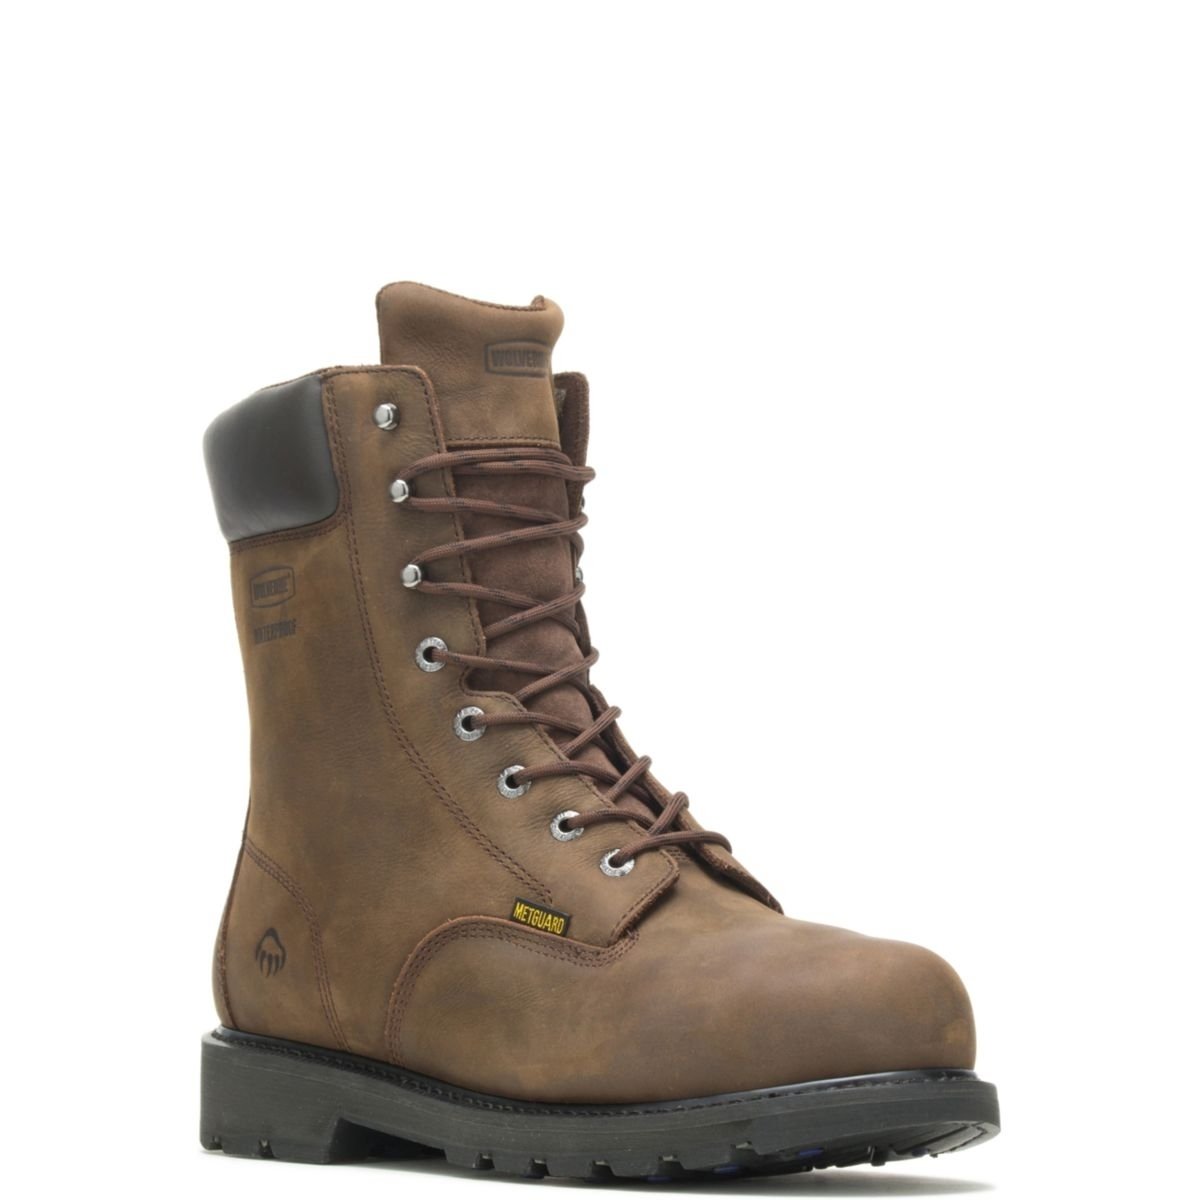 WOLVERINE Men's McKay 8 Waterproof Steel Toe Work Boot Brown - W05680 10 BROWN - BROWN, 11